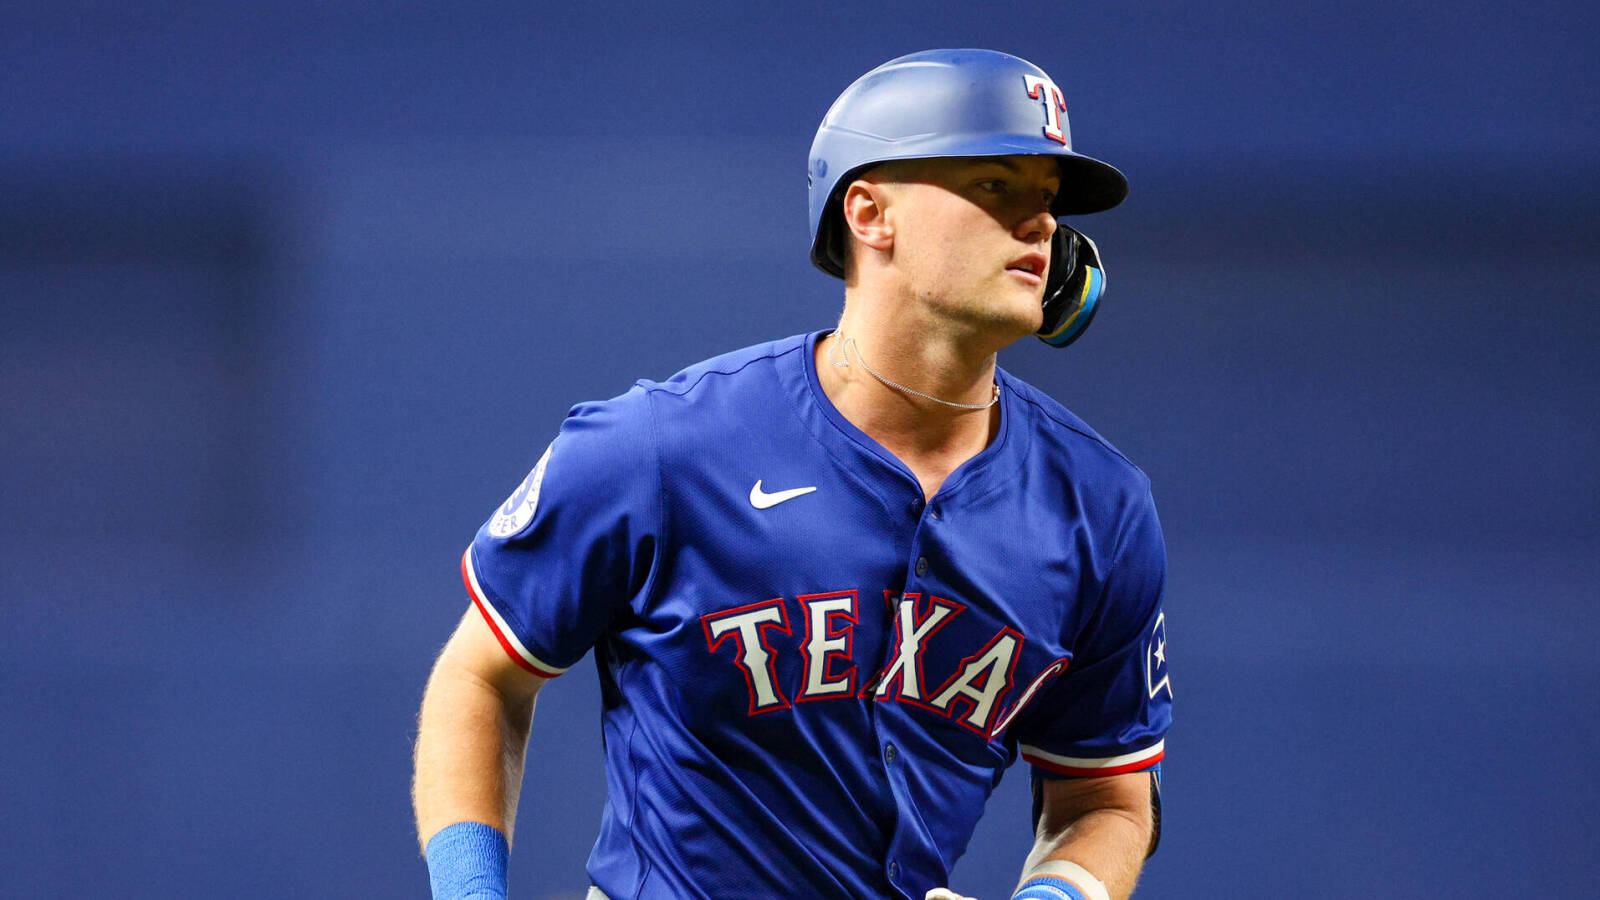 All-Star Rangers infielder out 8-10 weeks following wrist surgery